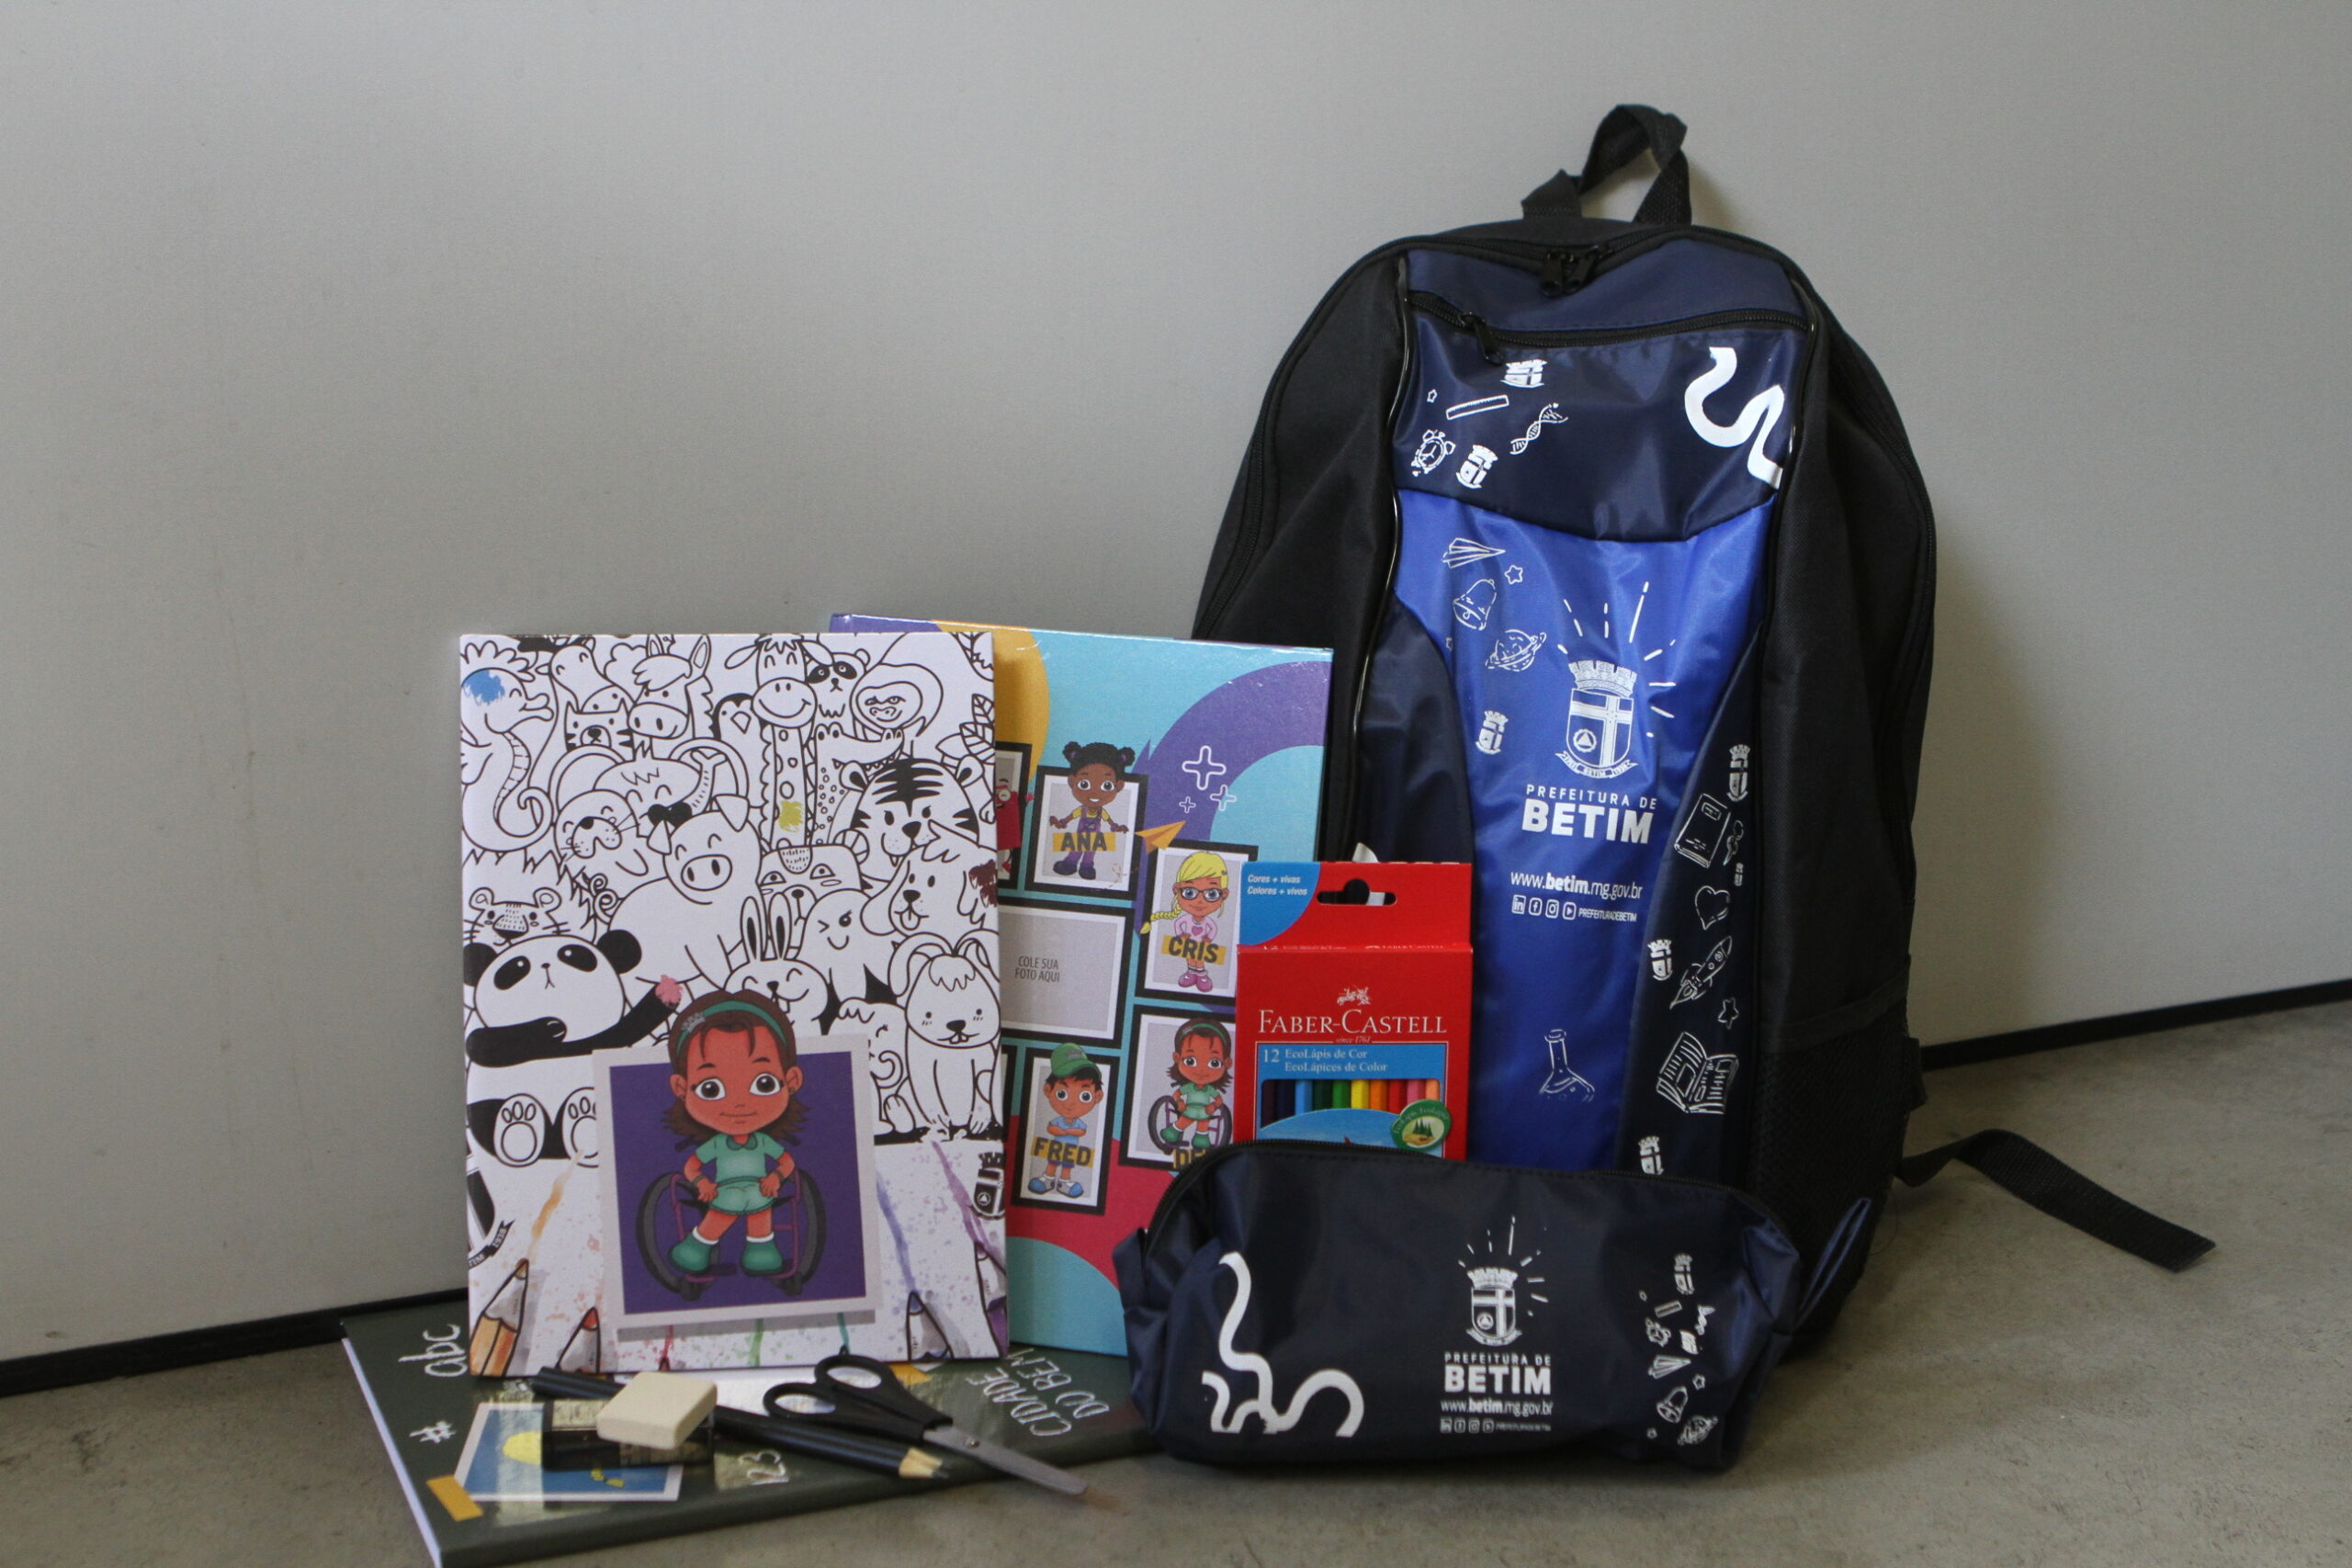 Kit com materiais escolares que serão distribuidos para alunos da rede pública de Betim, na região metropolitana de Belo Horizonte